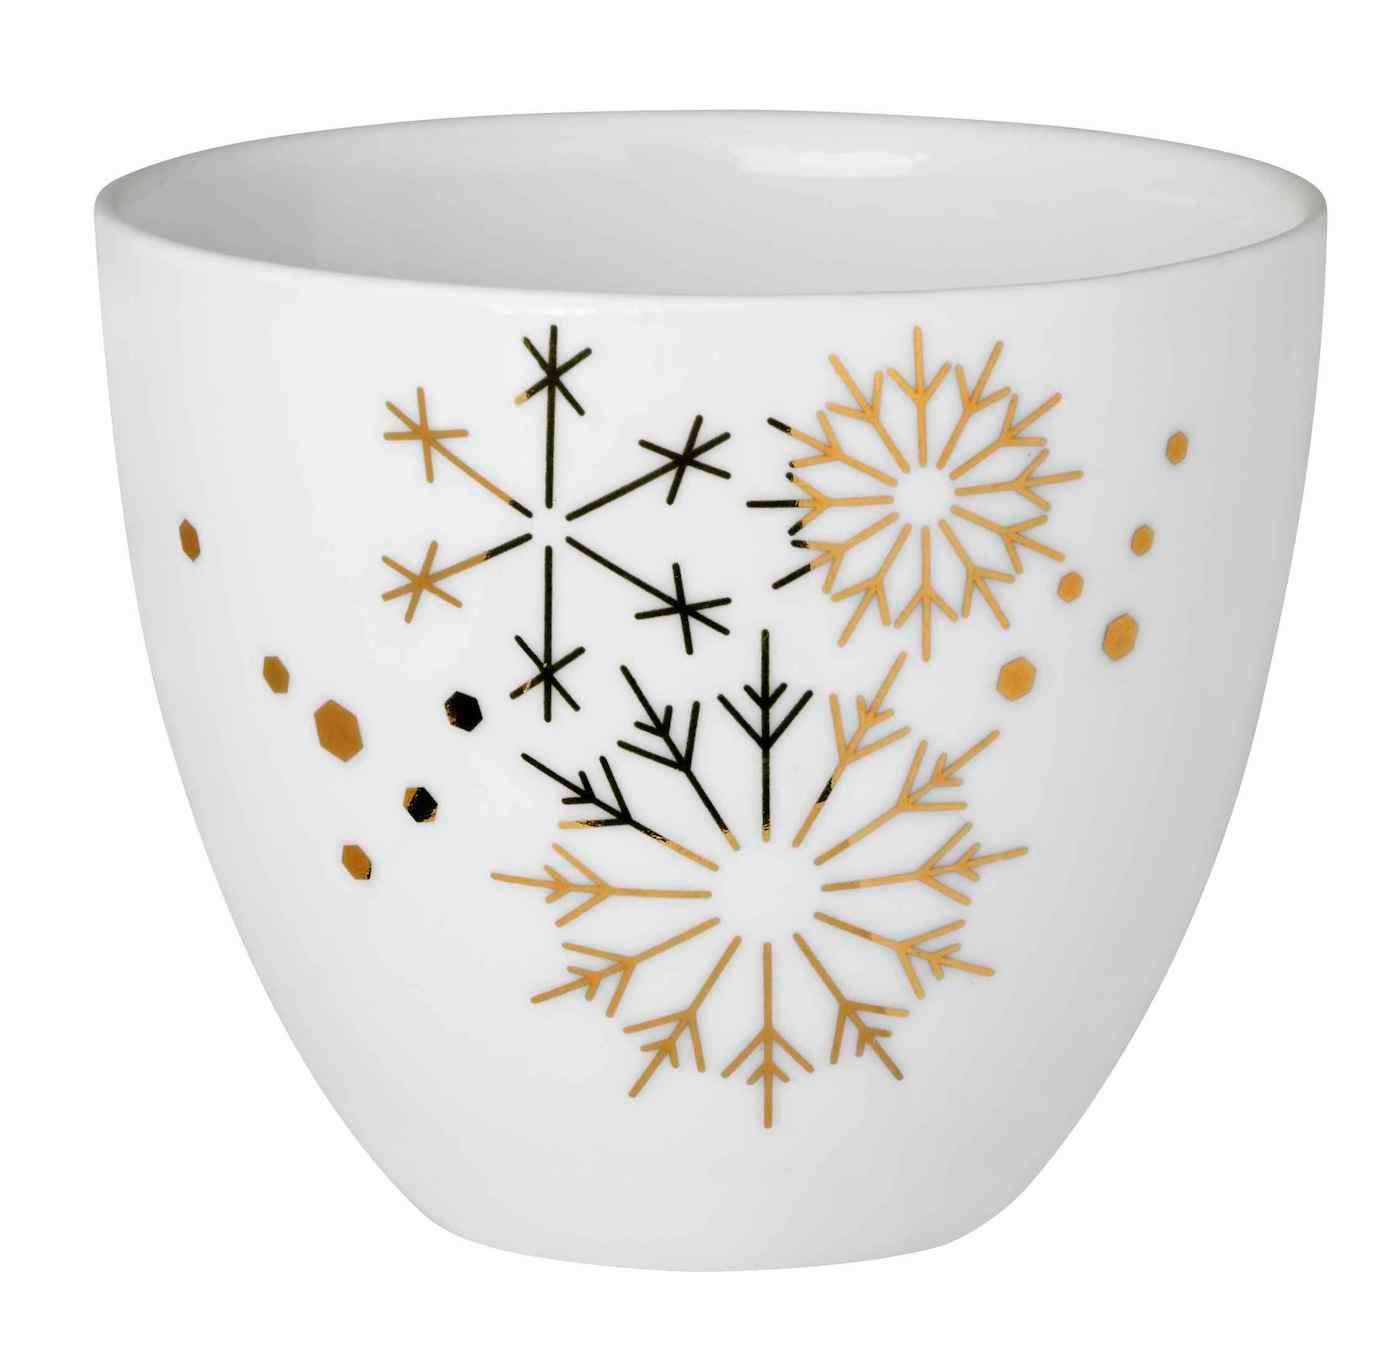 Räder Design Teelichthalter Gold weiß H6,5cm Schneeflocken Porzellan Porzellanlicht gold